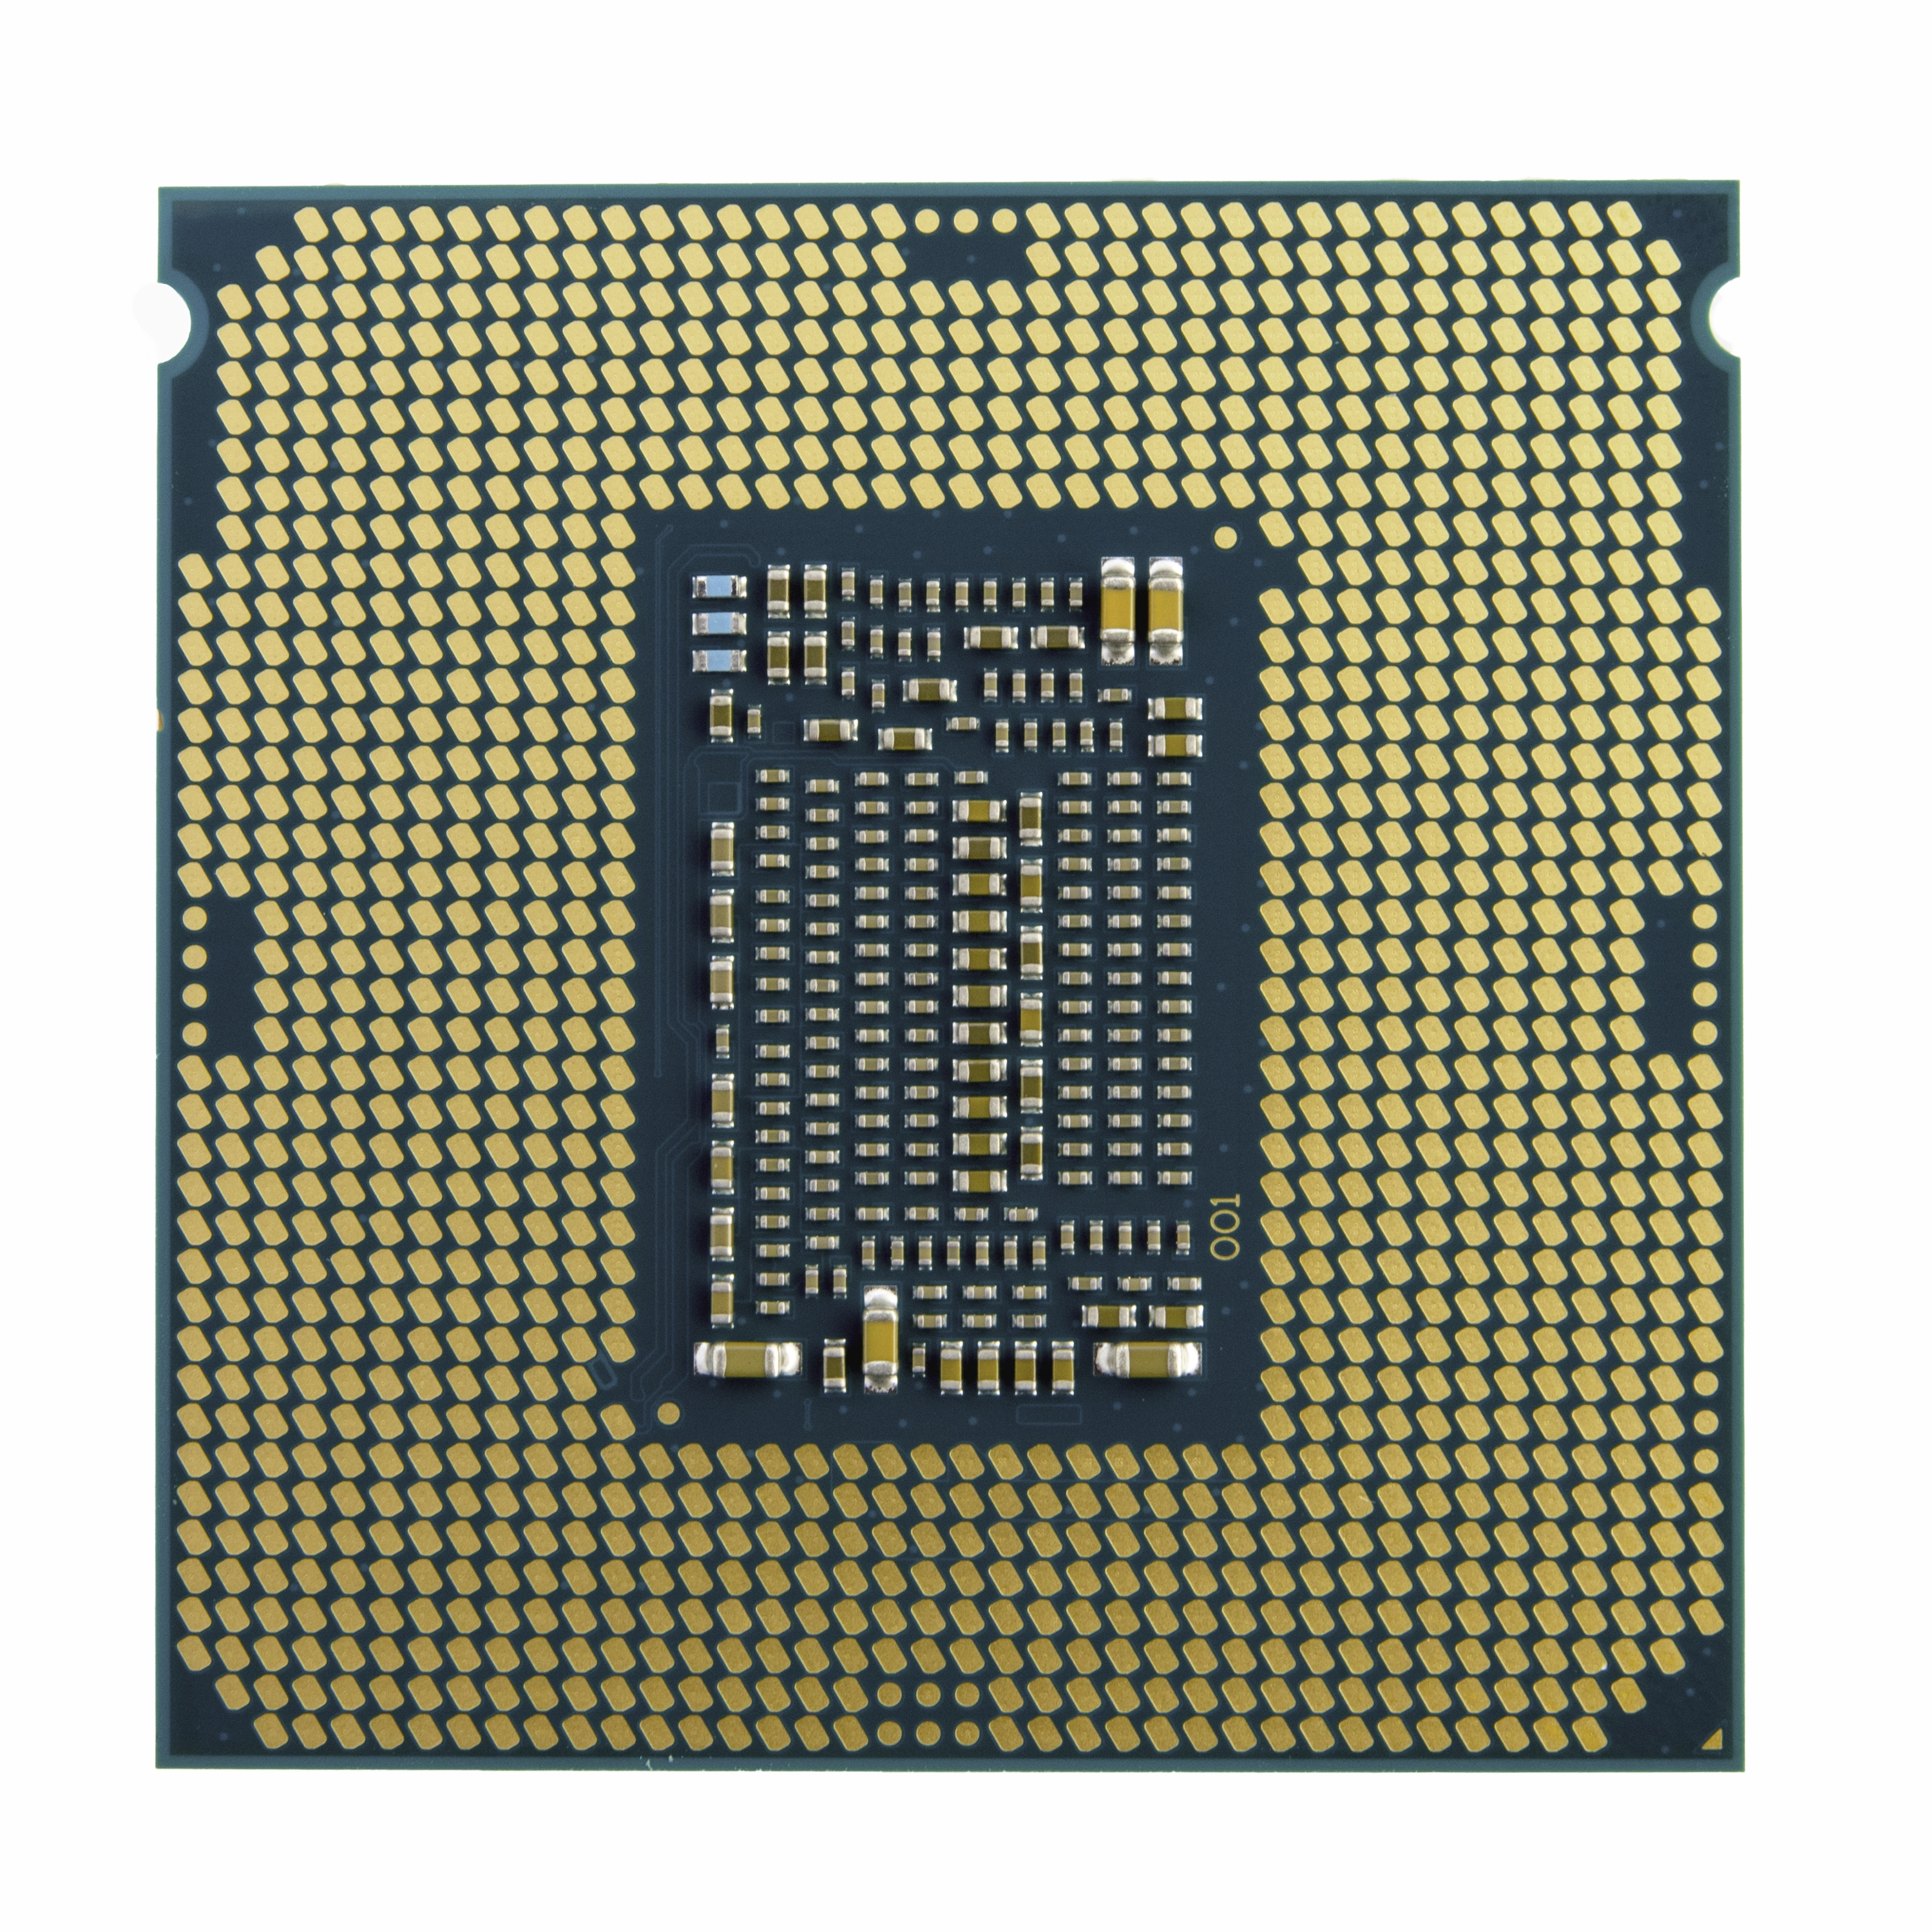 Intel Core i5-10400F 6x 2.9 GHz So. 1200 Boxed